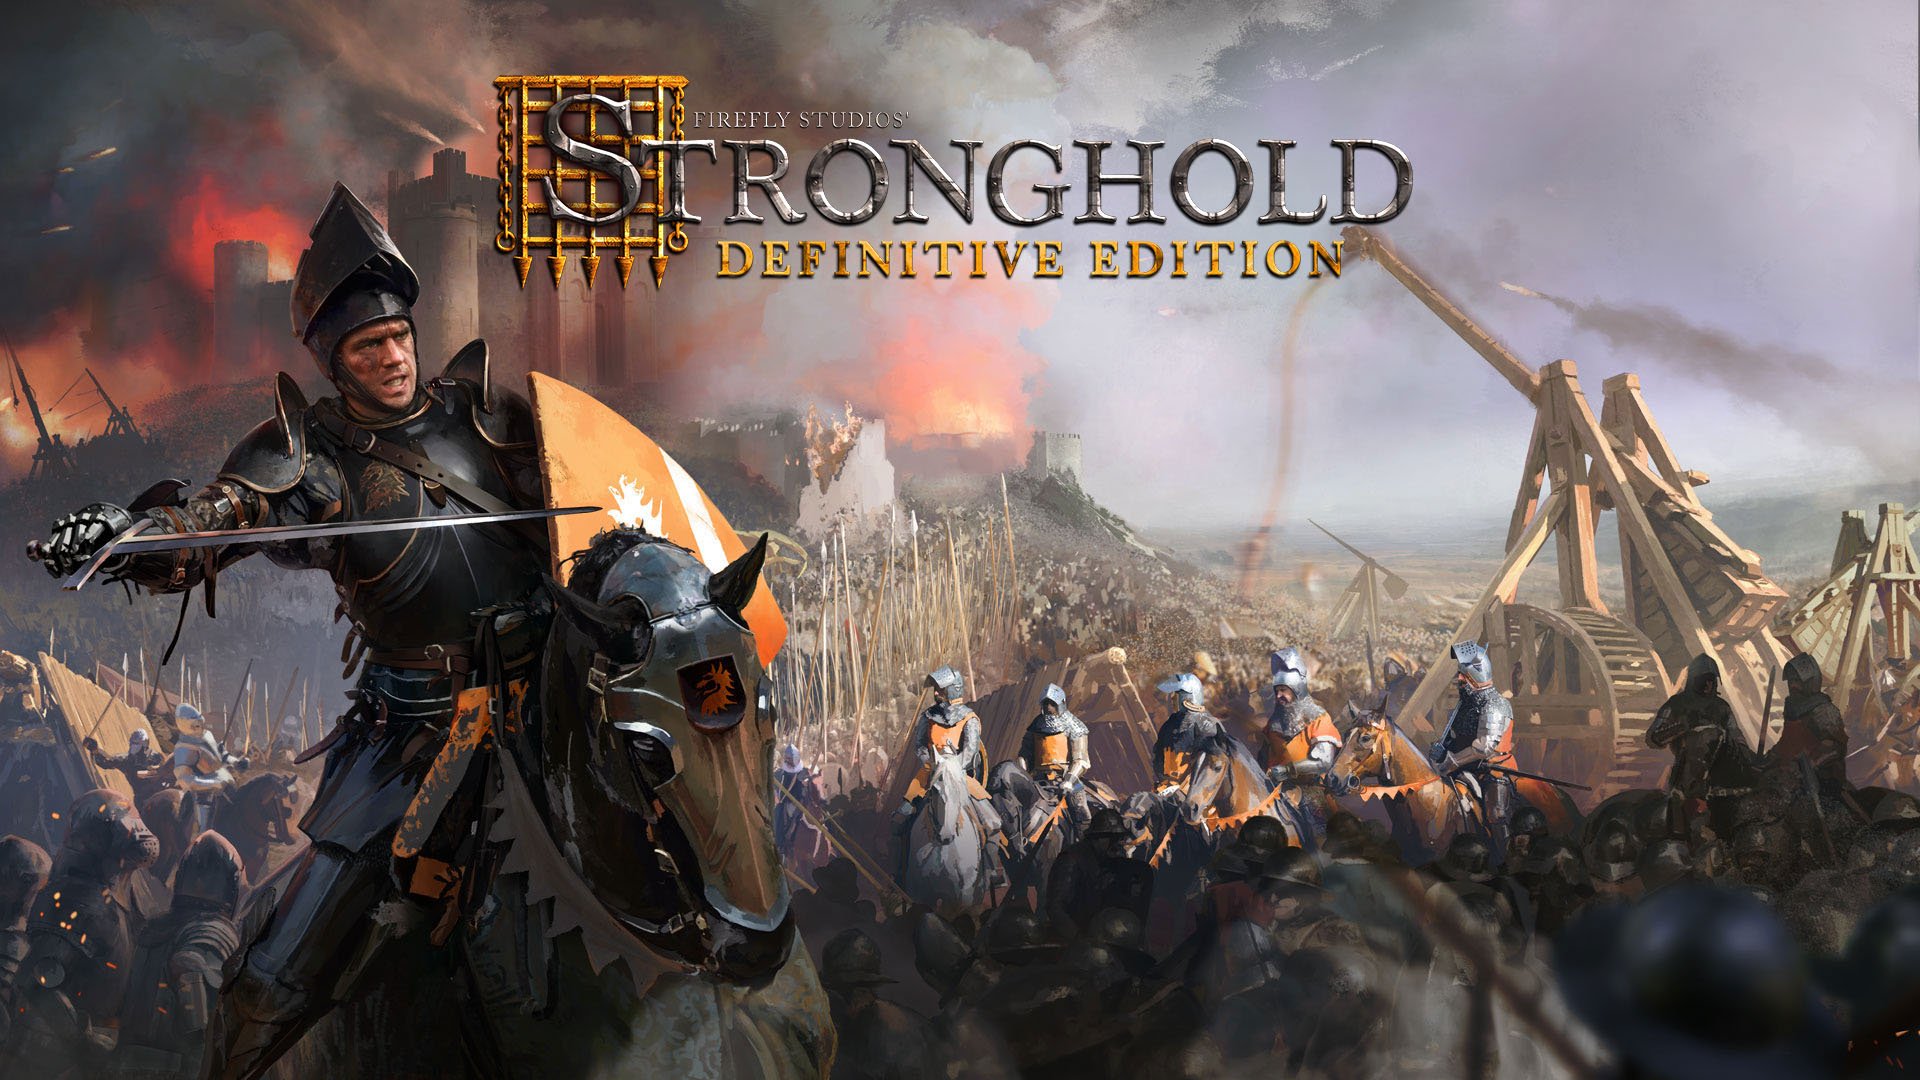 El RTS Stronghold original de 2001 tendrá por fin una remasterización completa